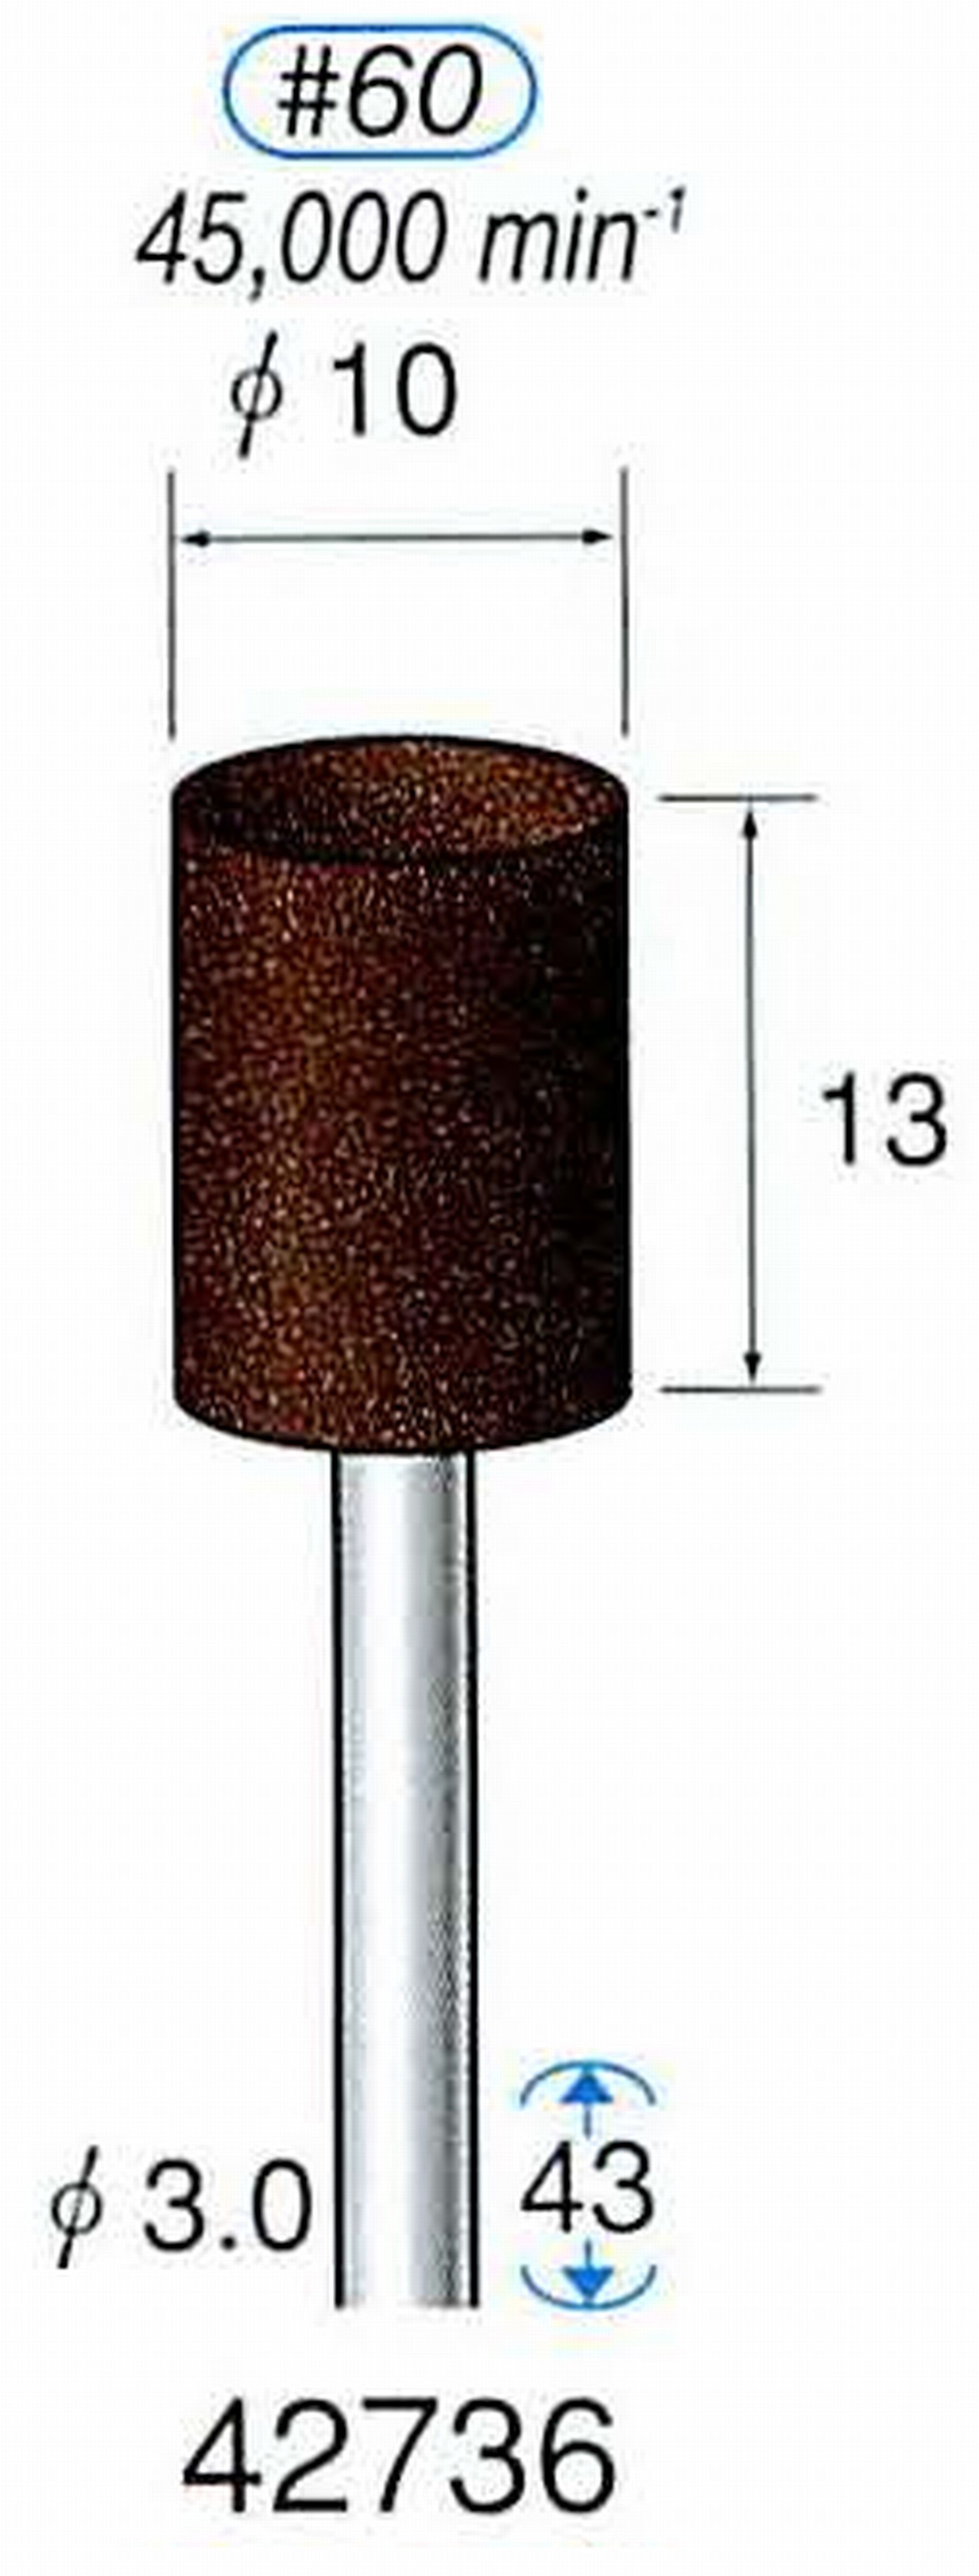 ナカニシ/NAKANISHI 軸付砥石(A・WA砥粒) ブラウン砥石 軸径(シャンク) φ3.0mm 42736